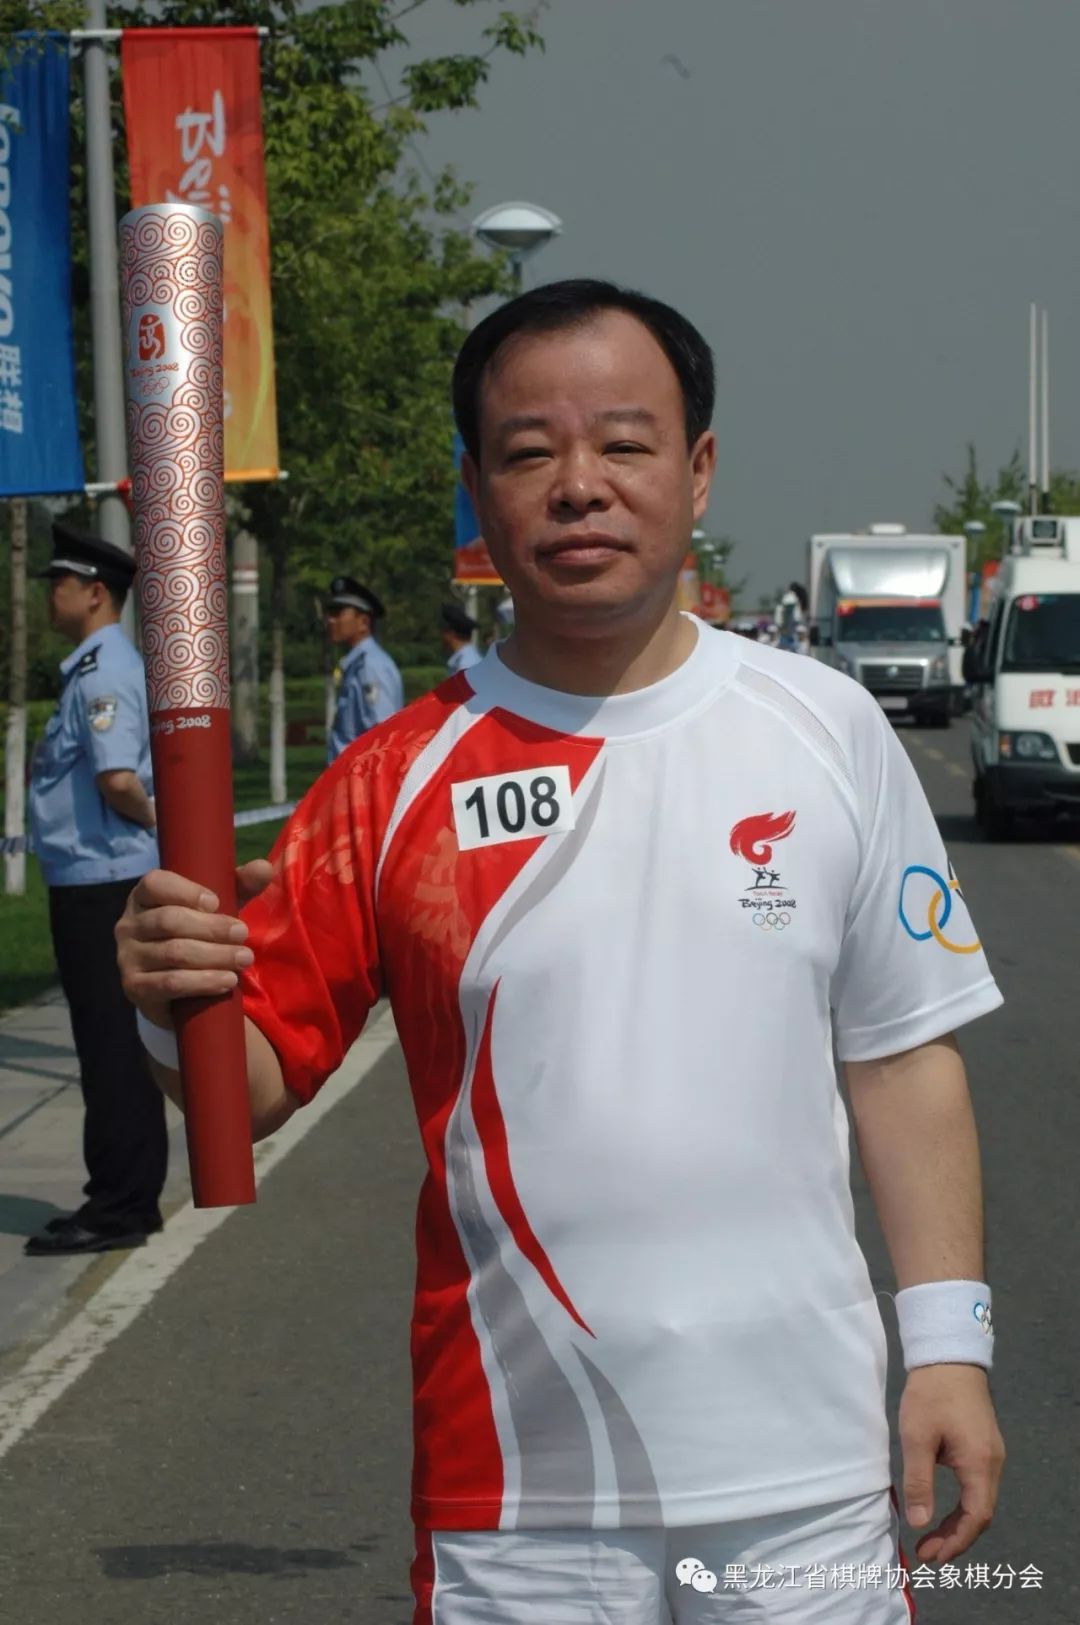 2008年7月哈尔滨,2008北京奥运火炬手赵国荣老师在奥运火炬传递活动中